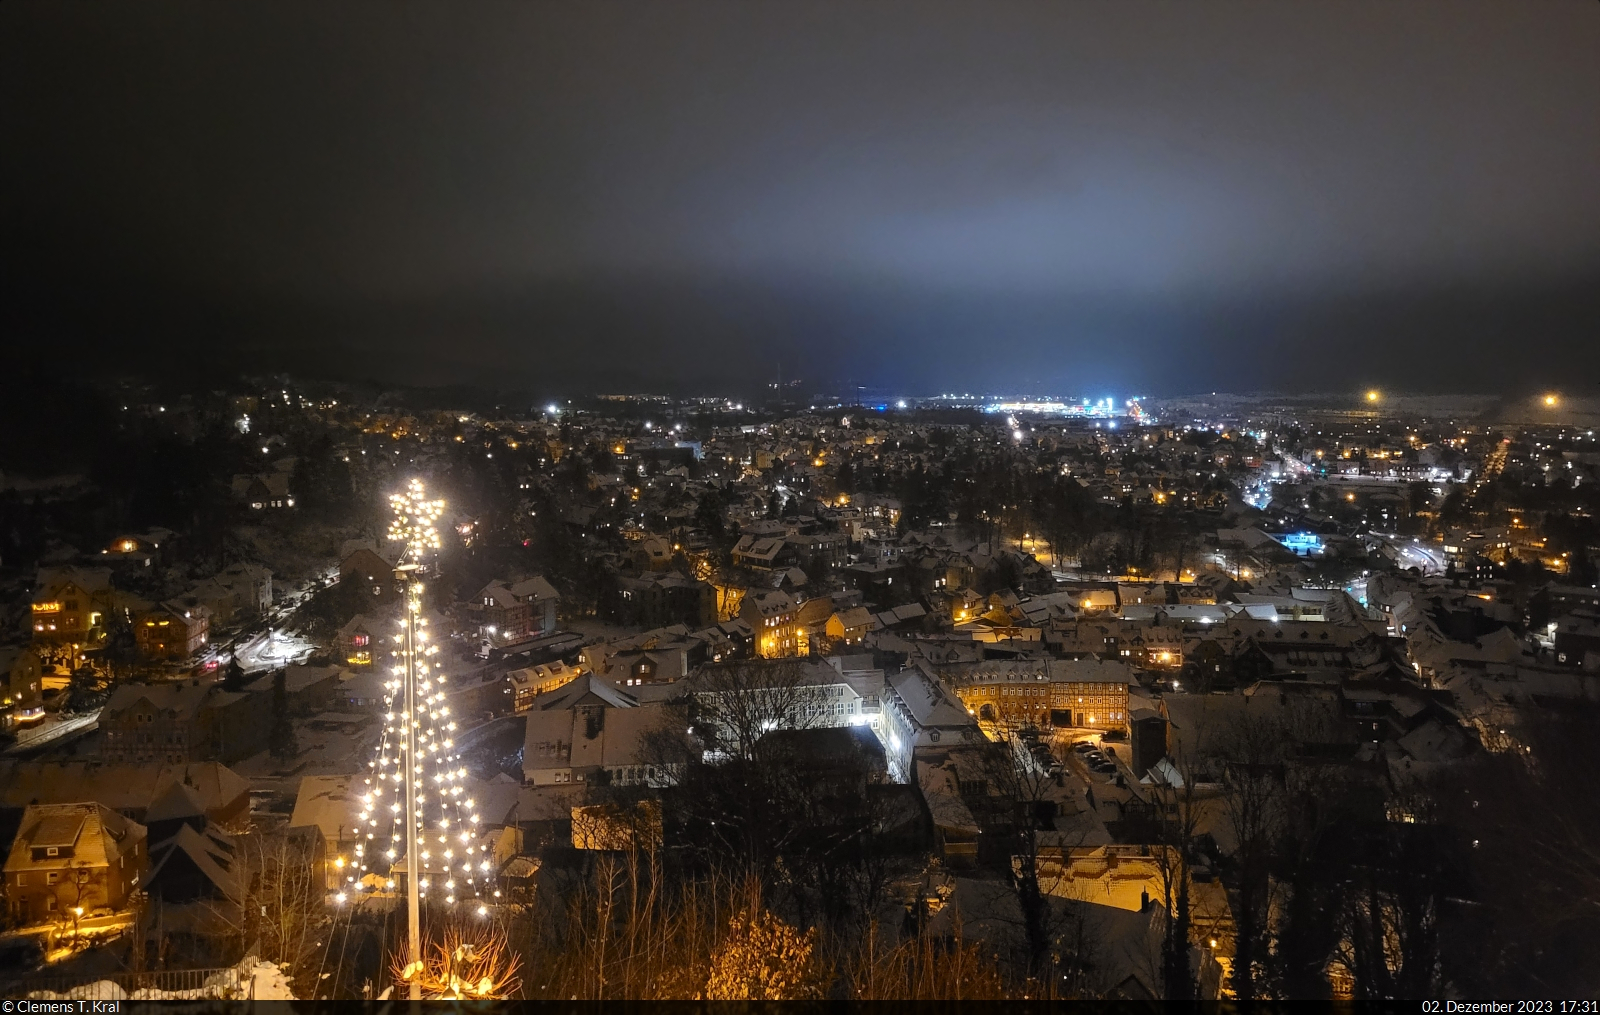 Eine Stunde spter noch mal ein hnliches Panorama-Foto von Blankenburg (Harz), diesmal im Dunkeln und mit weihnachtlicher Beleuchtung.
Entstanden whrend der 9. Blankenburger Schlossweihnacht im Schloss Blankenburg.

🕓 2.12.2023 | 17:31 Uhr